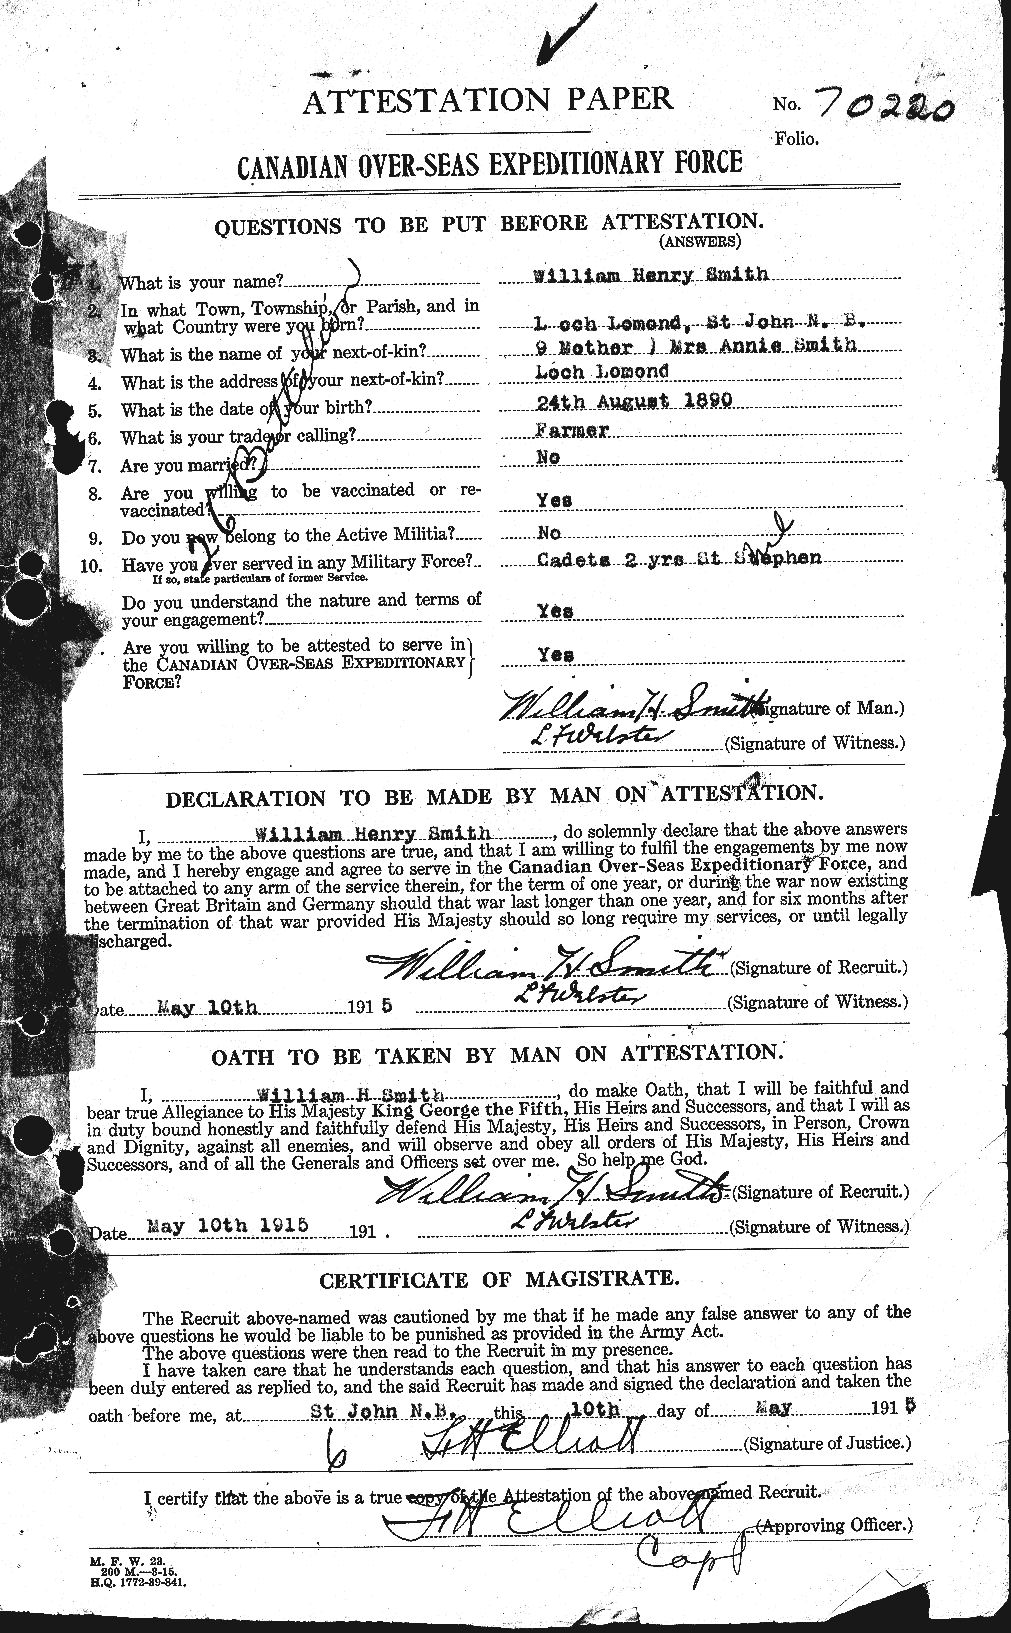 Dossiers du Personnel de la Première Guerre mondiale - CEC 109279a